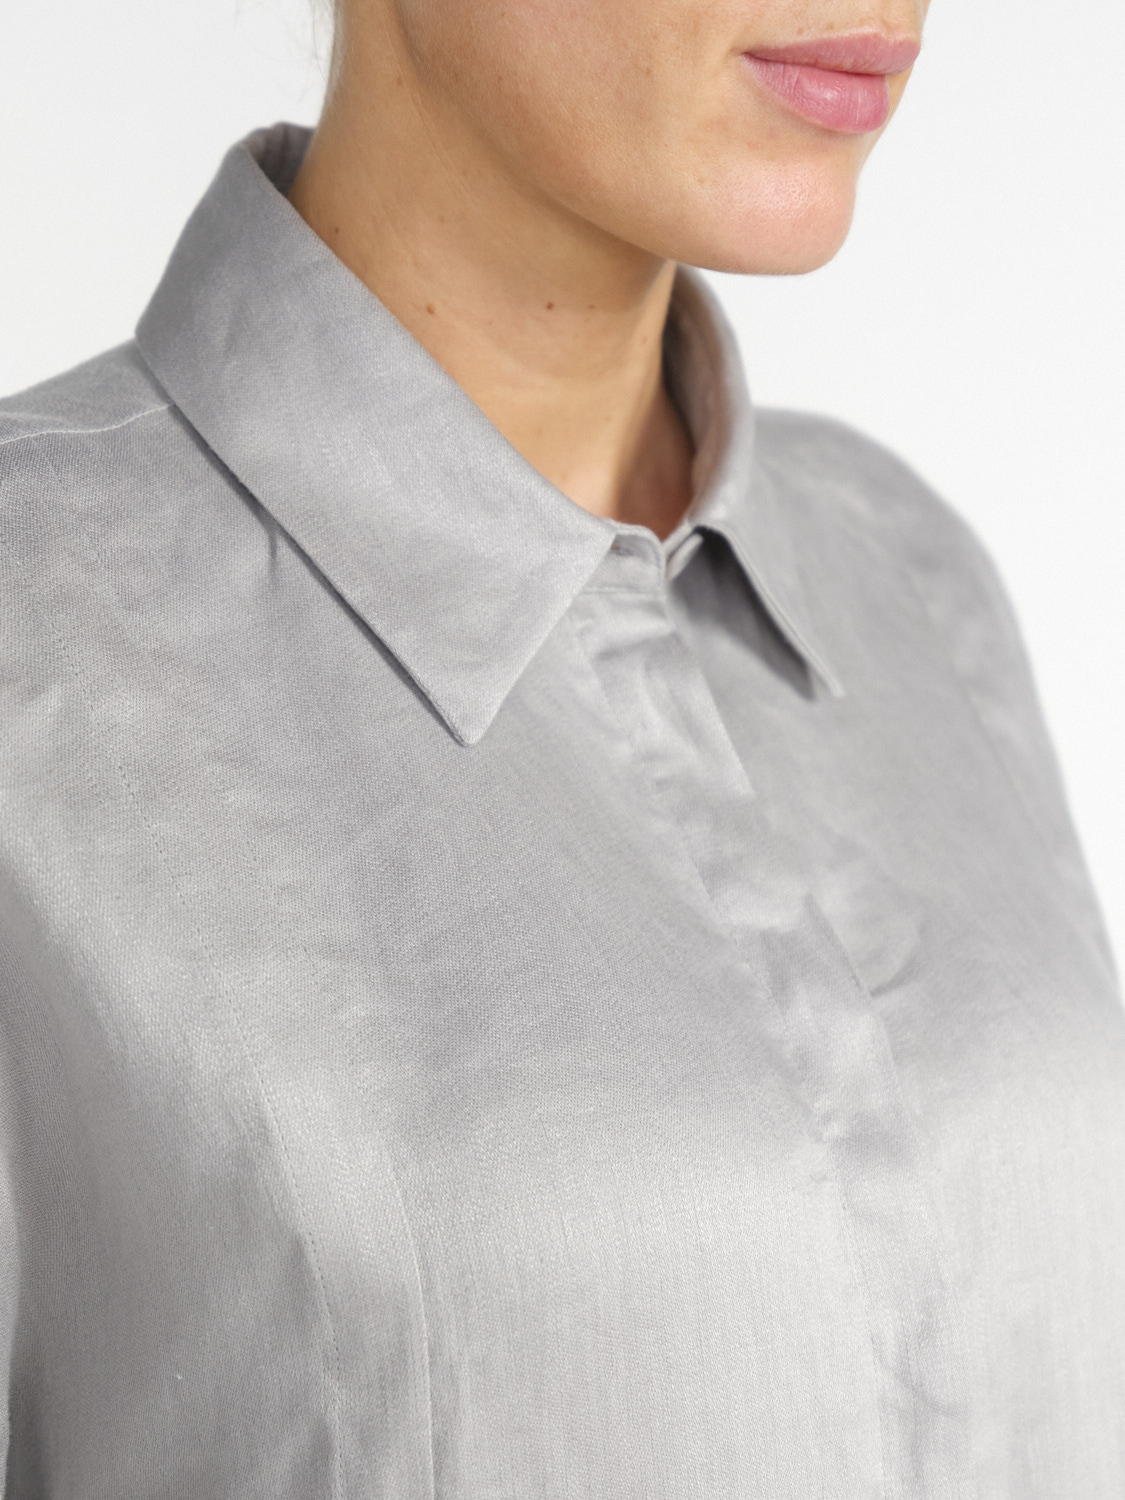 Iris von Arnim Laurita linen blouse  hellgrau 34